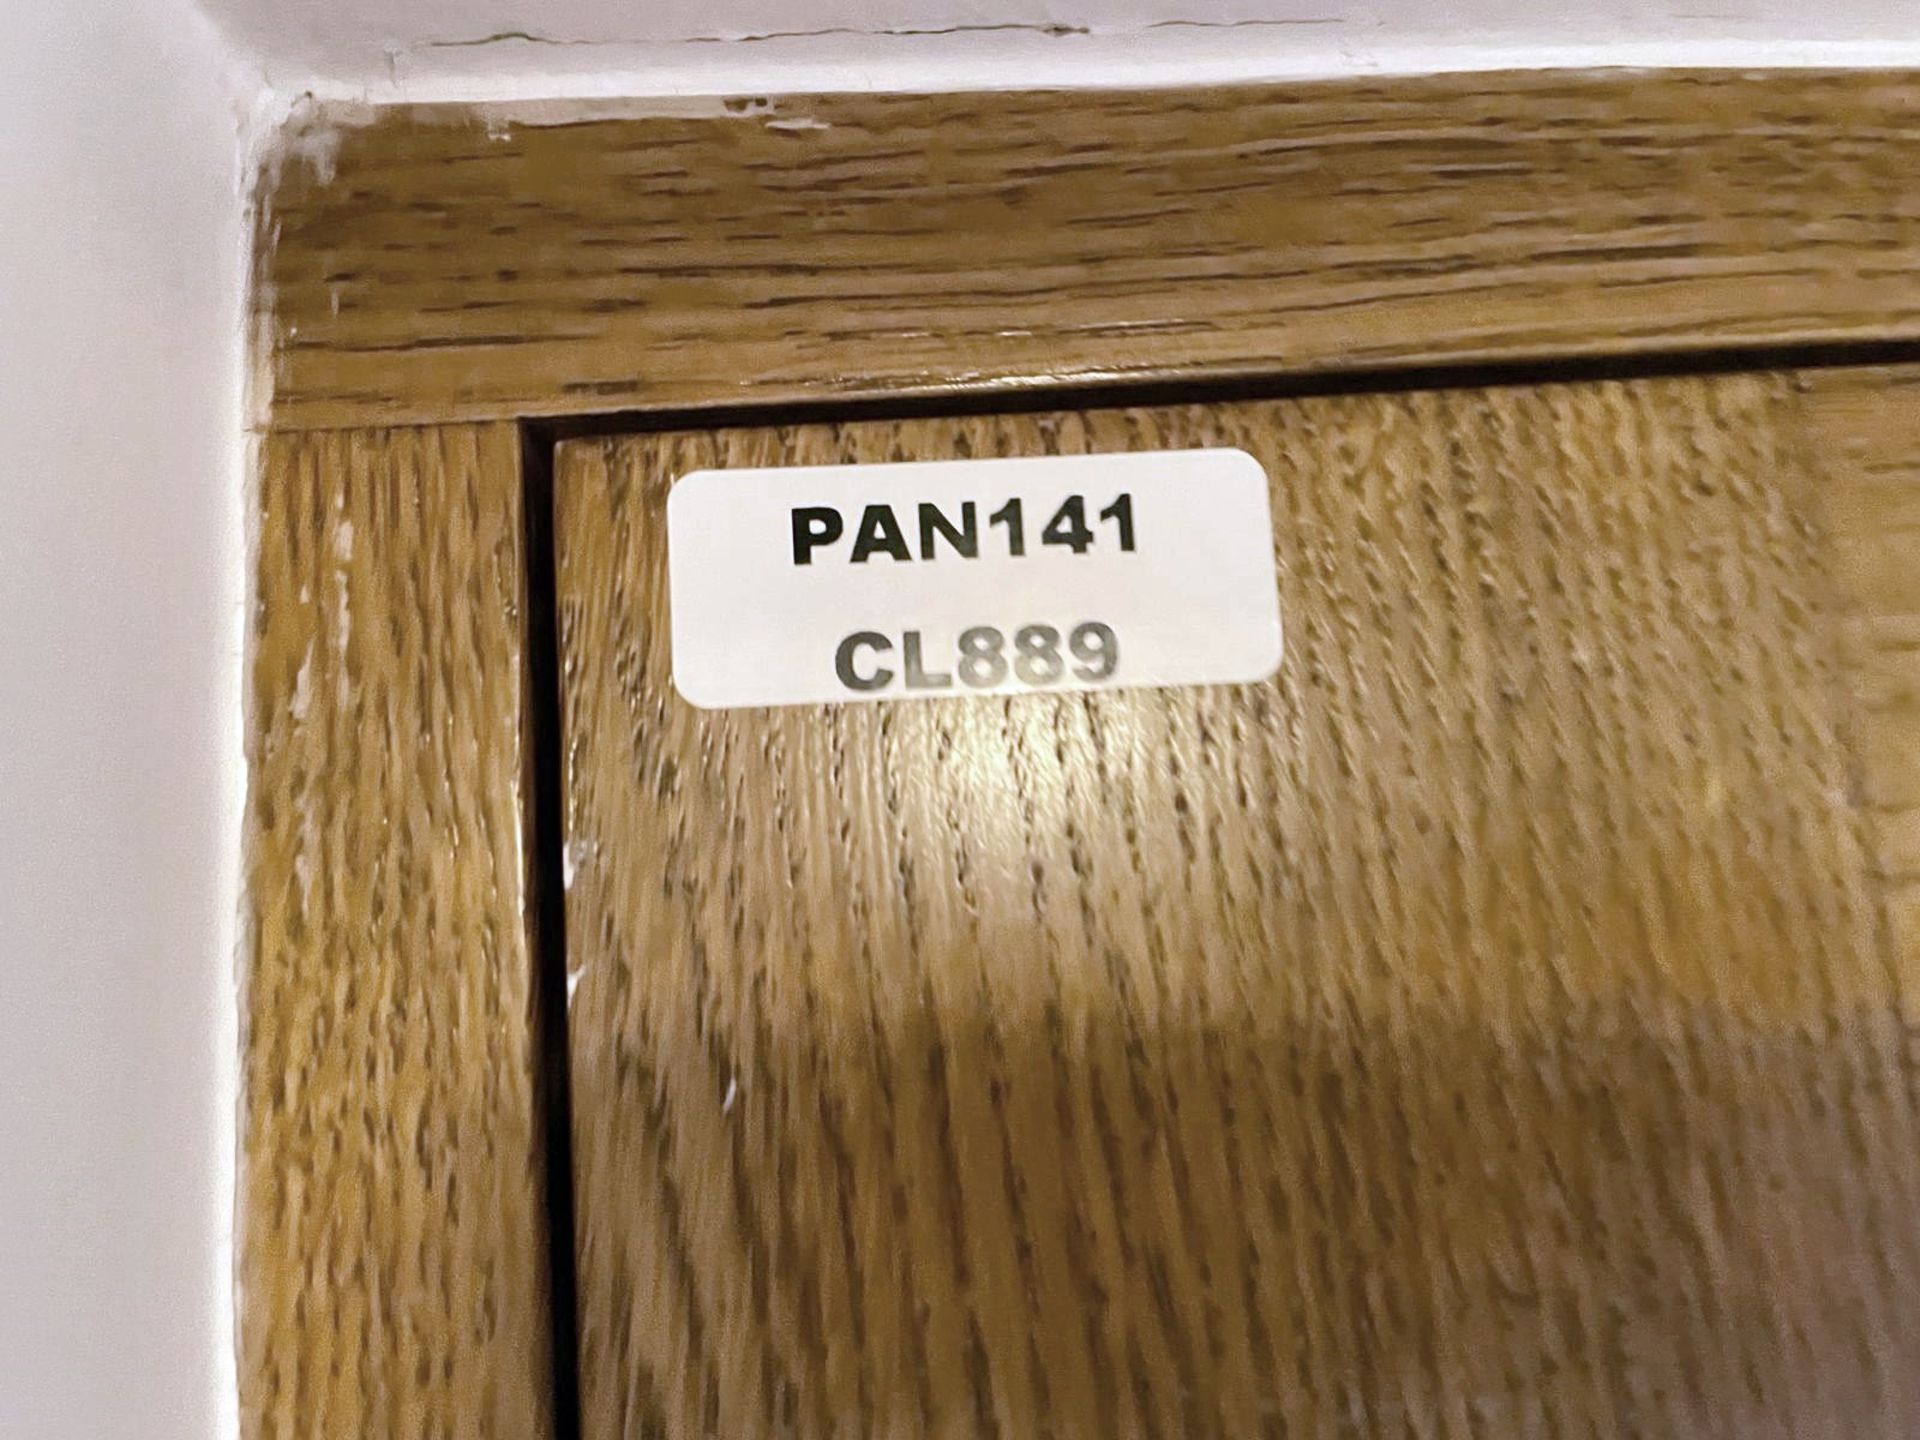 1 x Solid Wood Lockable Glazed External Side Door - Includes Hinges & Handles - Ref: PAN141 - NO VAT - Image 17 of 17